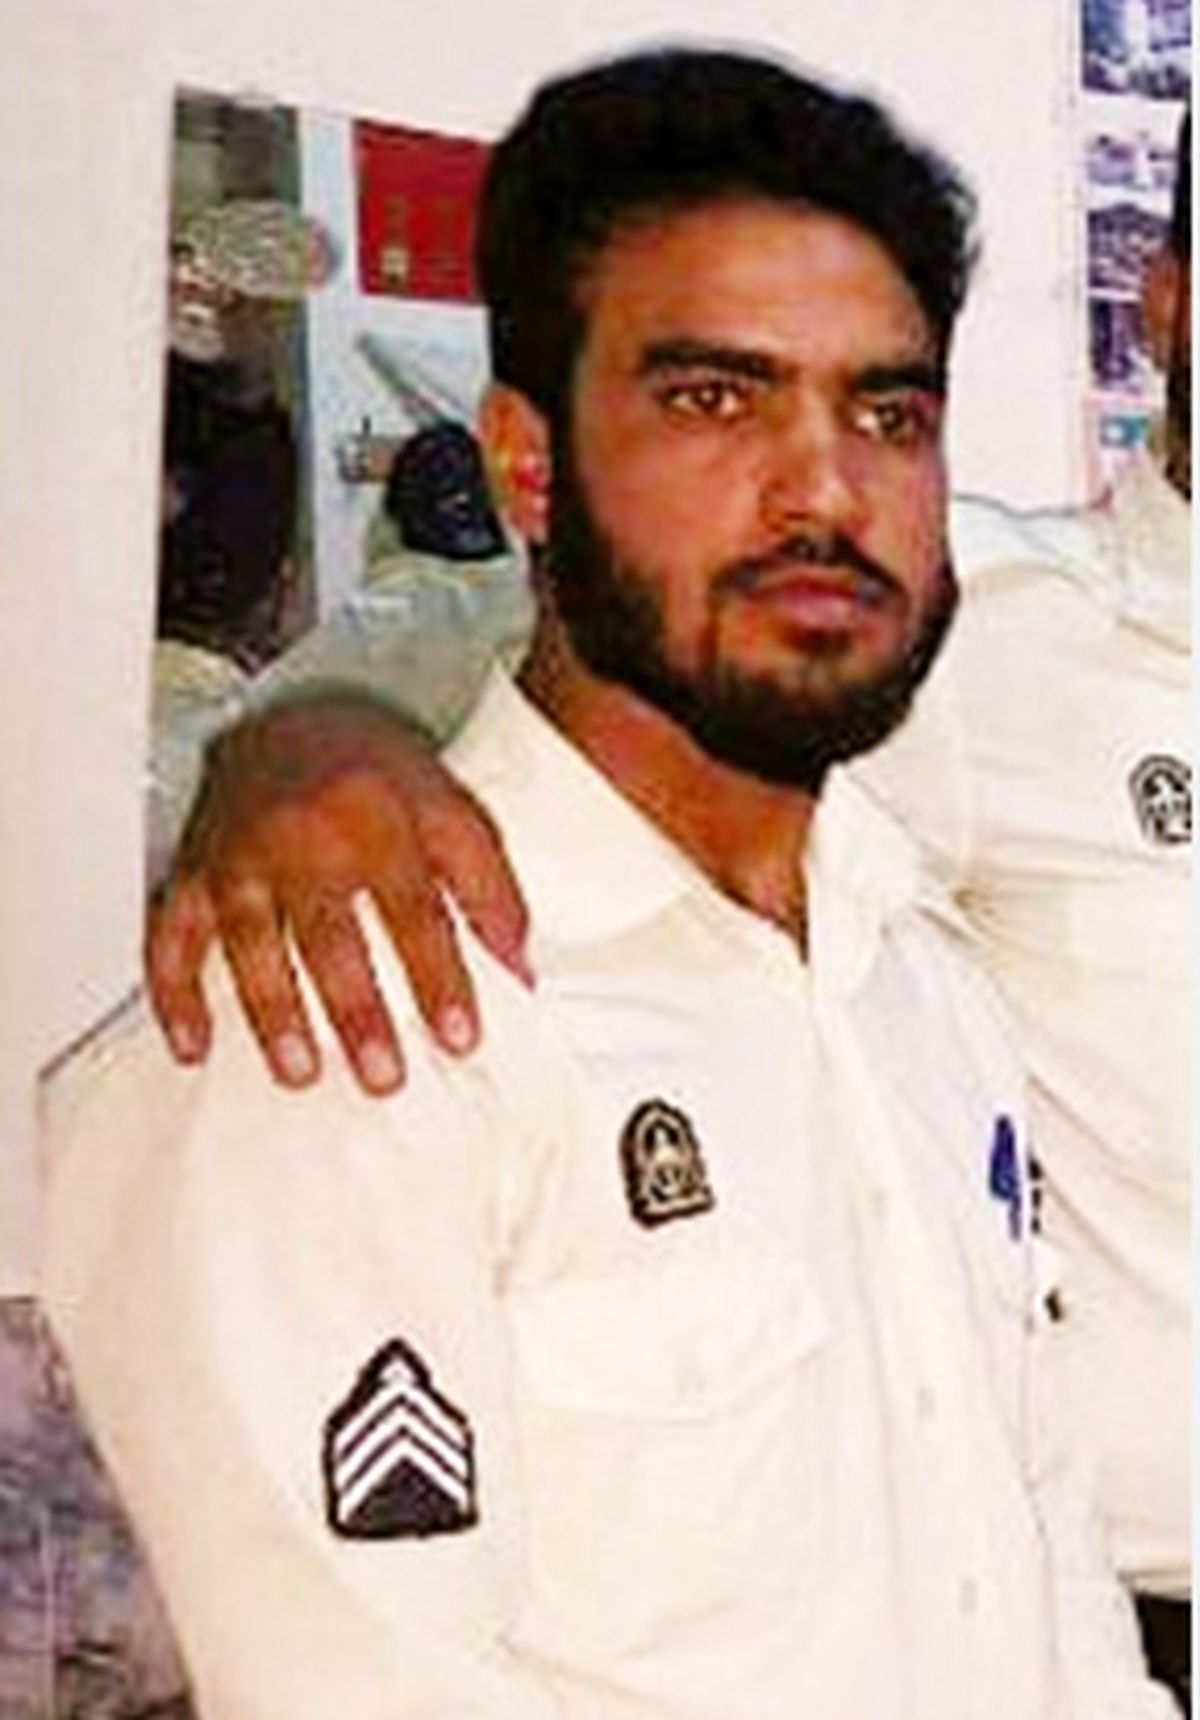 جزئیات حمله مسلحانه به یک مأمور پلیس در سیستان و بلوچستان